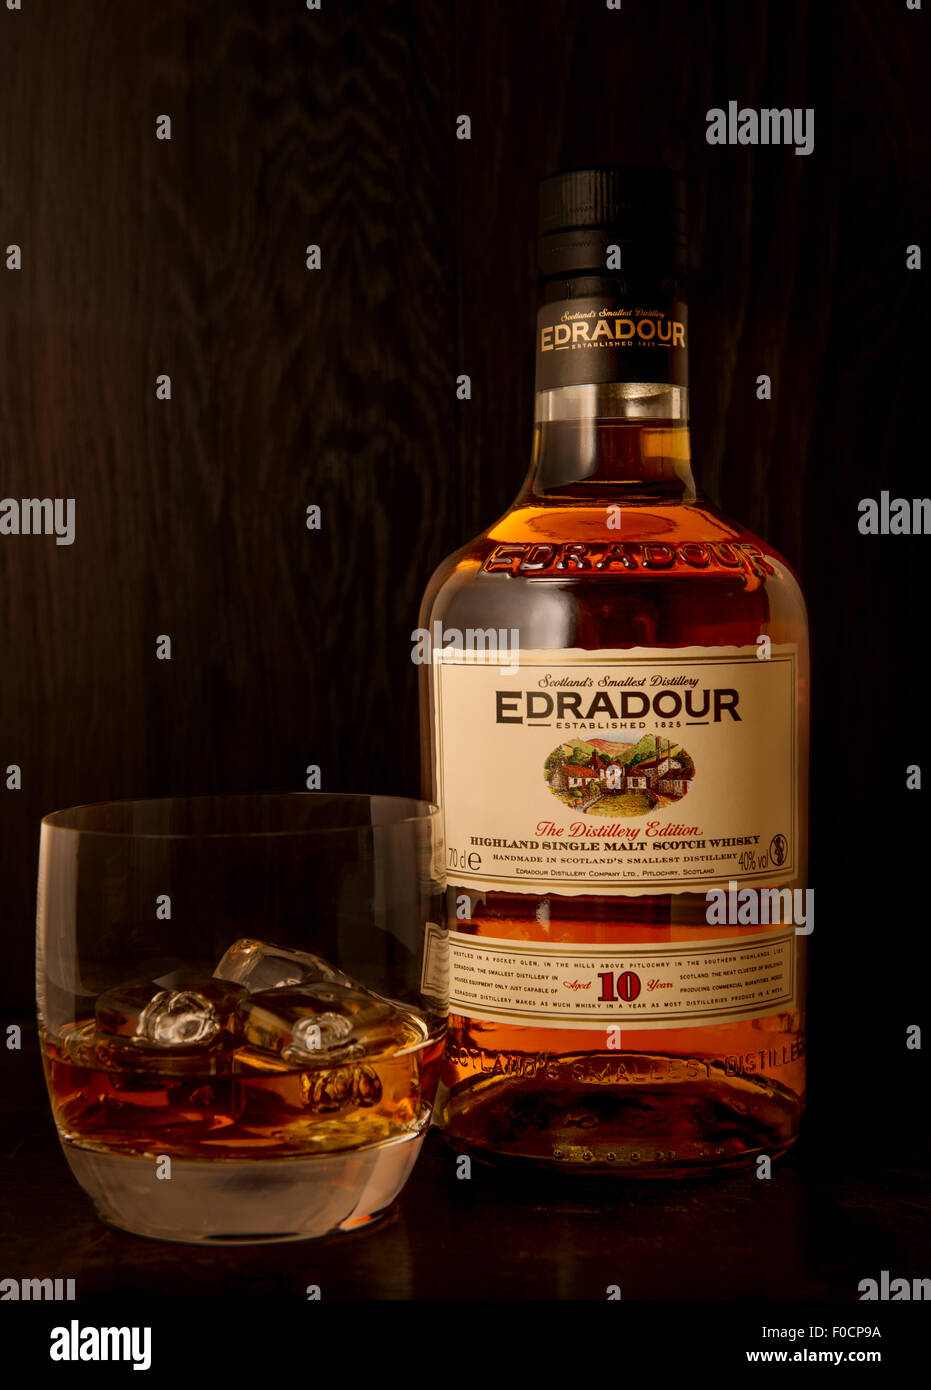 Single Malt Scotch whisky Edradour à partir de la plus petite distillerie d'Ecosse Banque D'Images